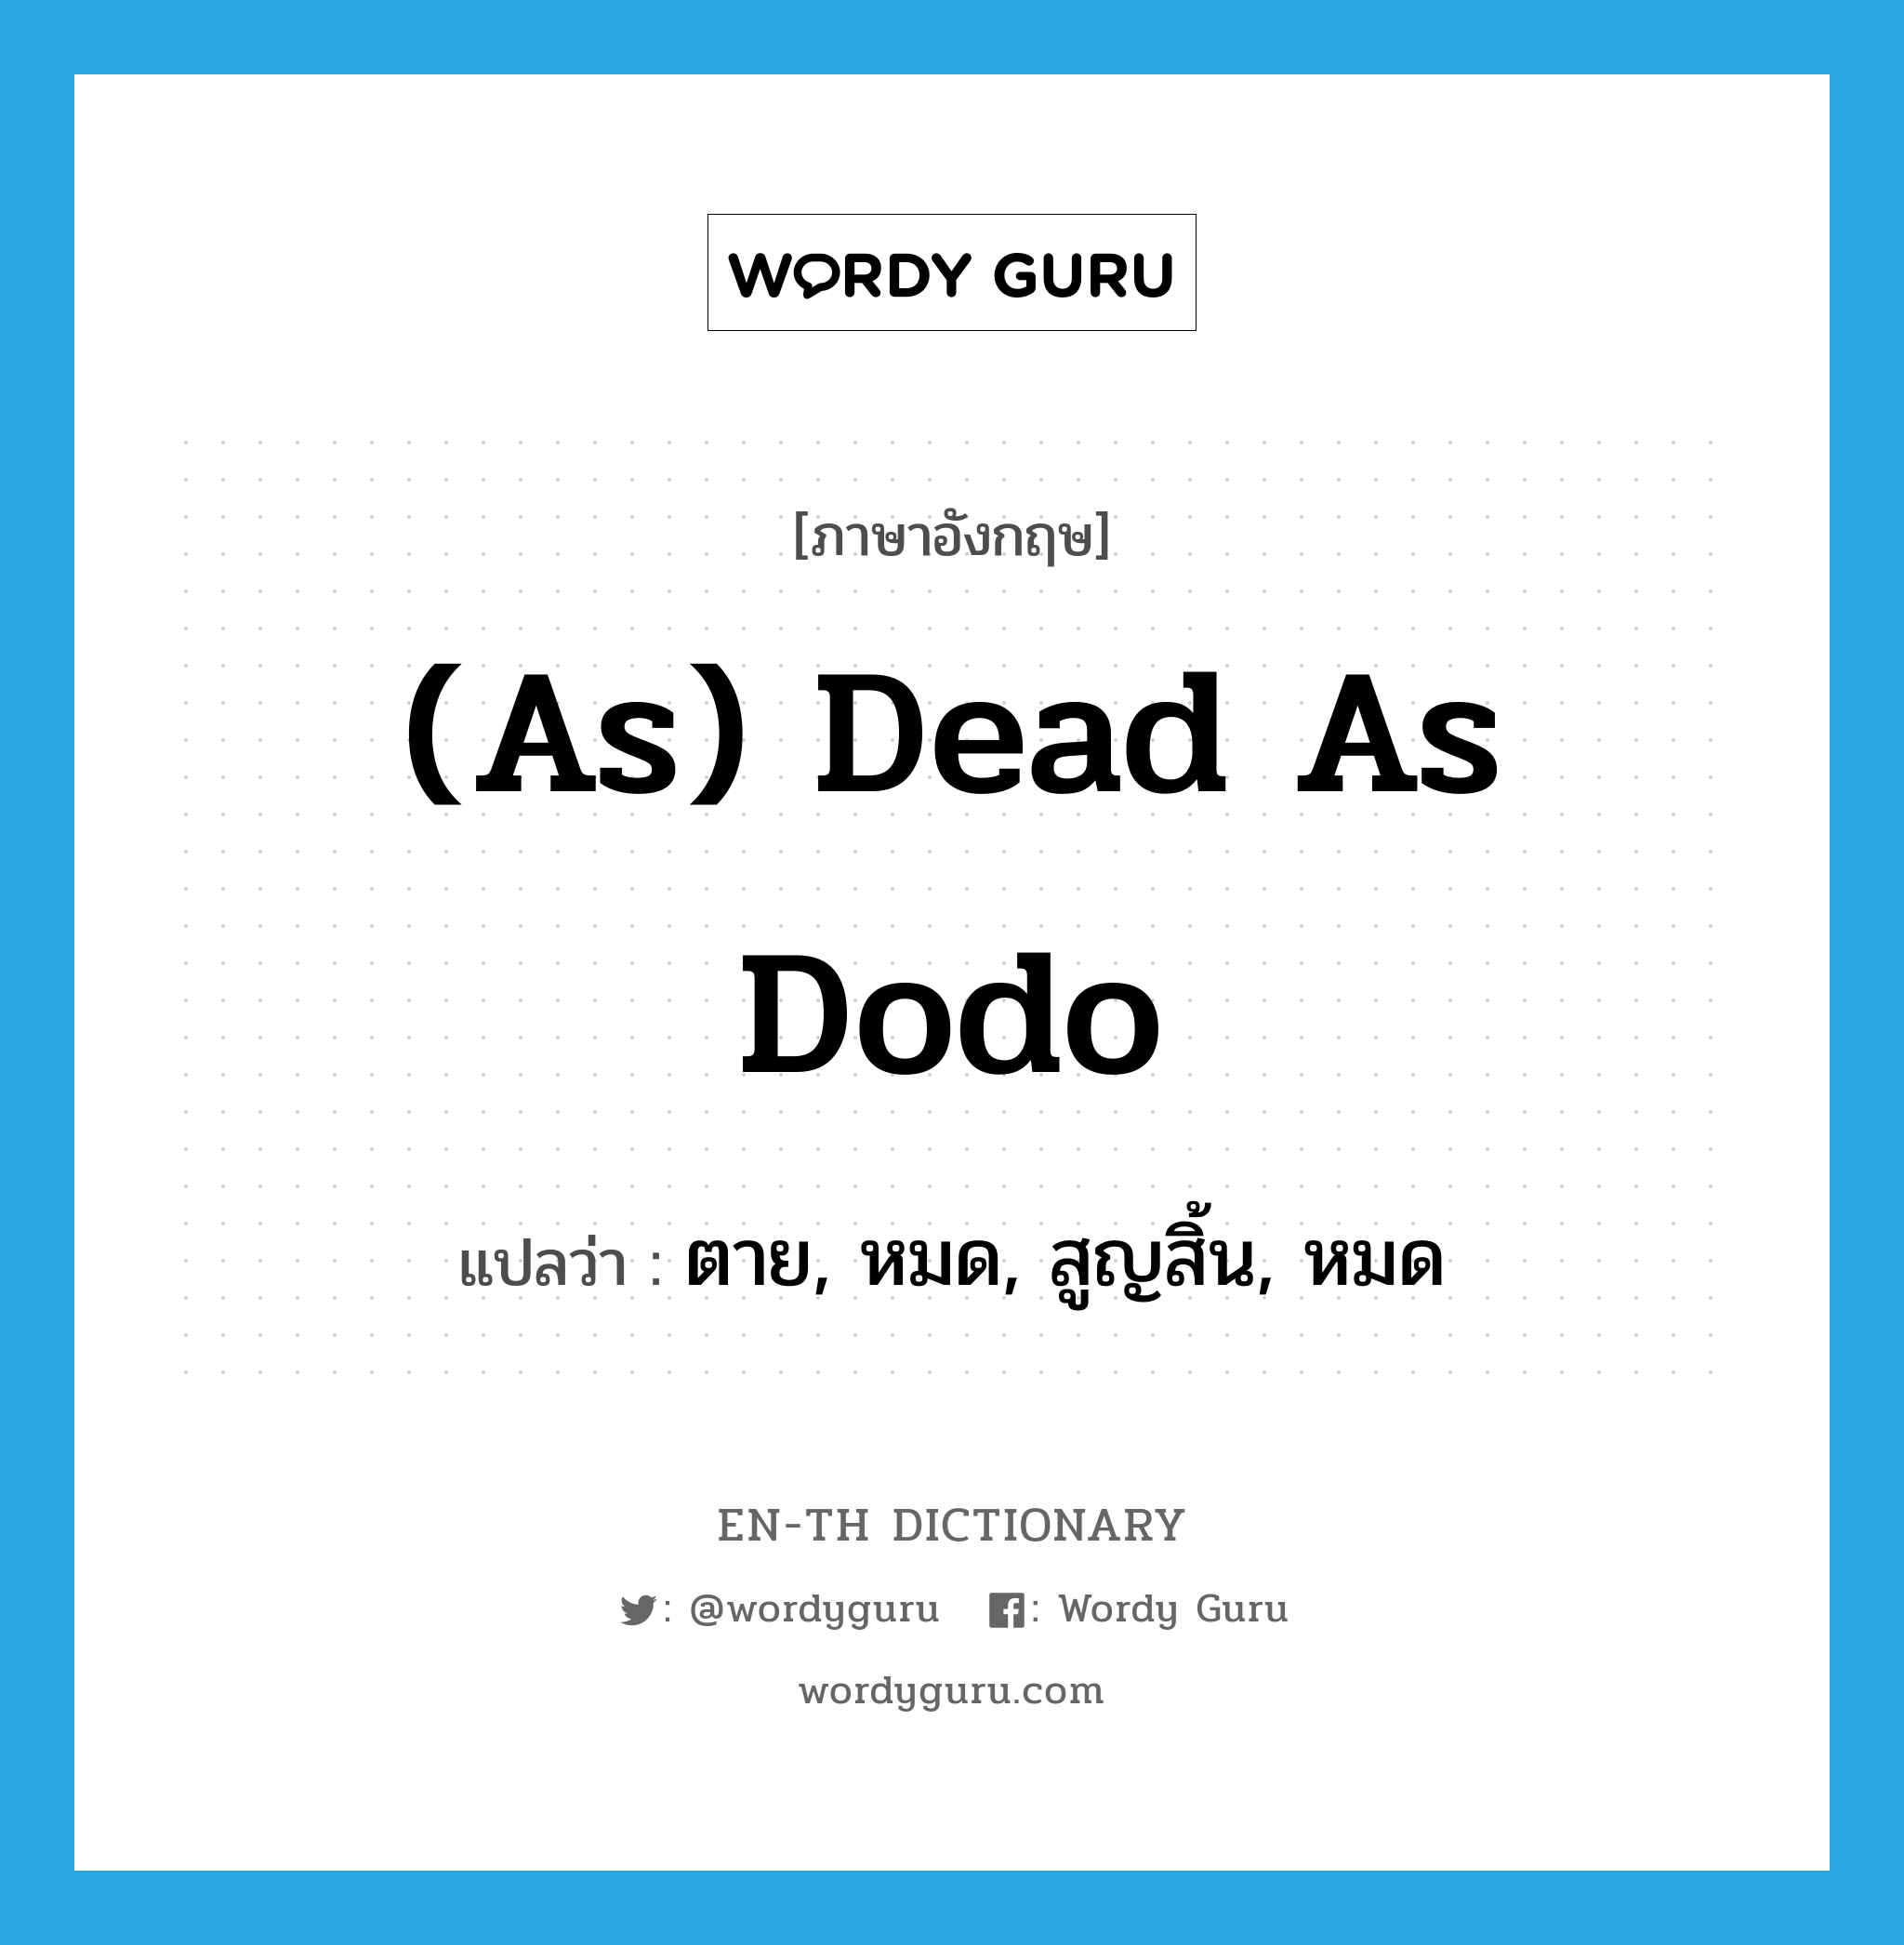 ตาย, หมด, สูญสิ้น, หมด ภาษาอังกฤษ?, คำศัพท์ภาษาอังกฤษ ตาย, หมด, สูญสิ้น, หมด แปลว่า (as) dead as dodo ประเภท IDM หมวด IDM